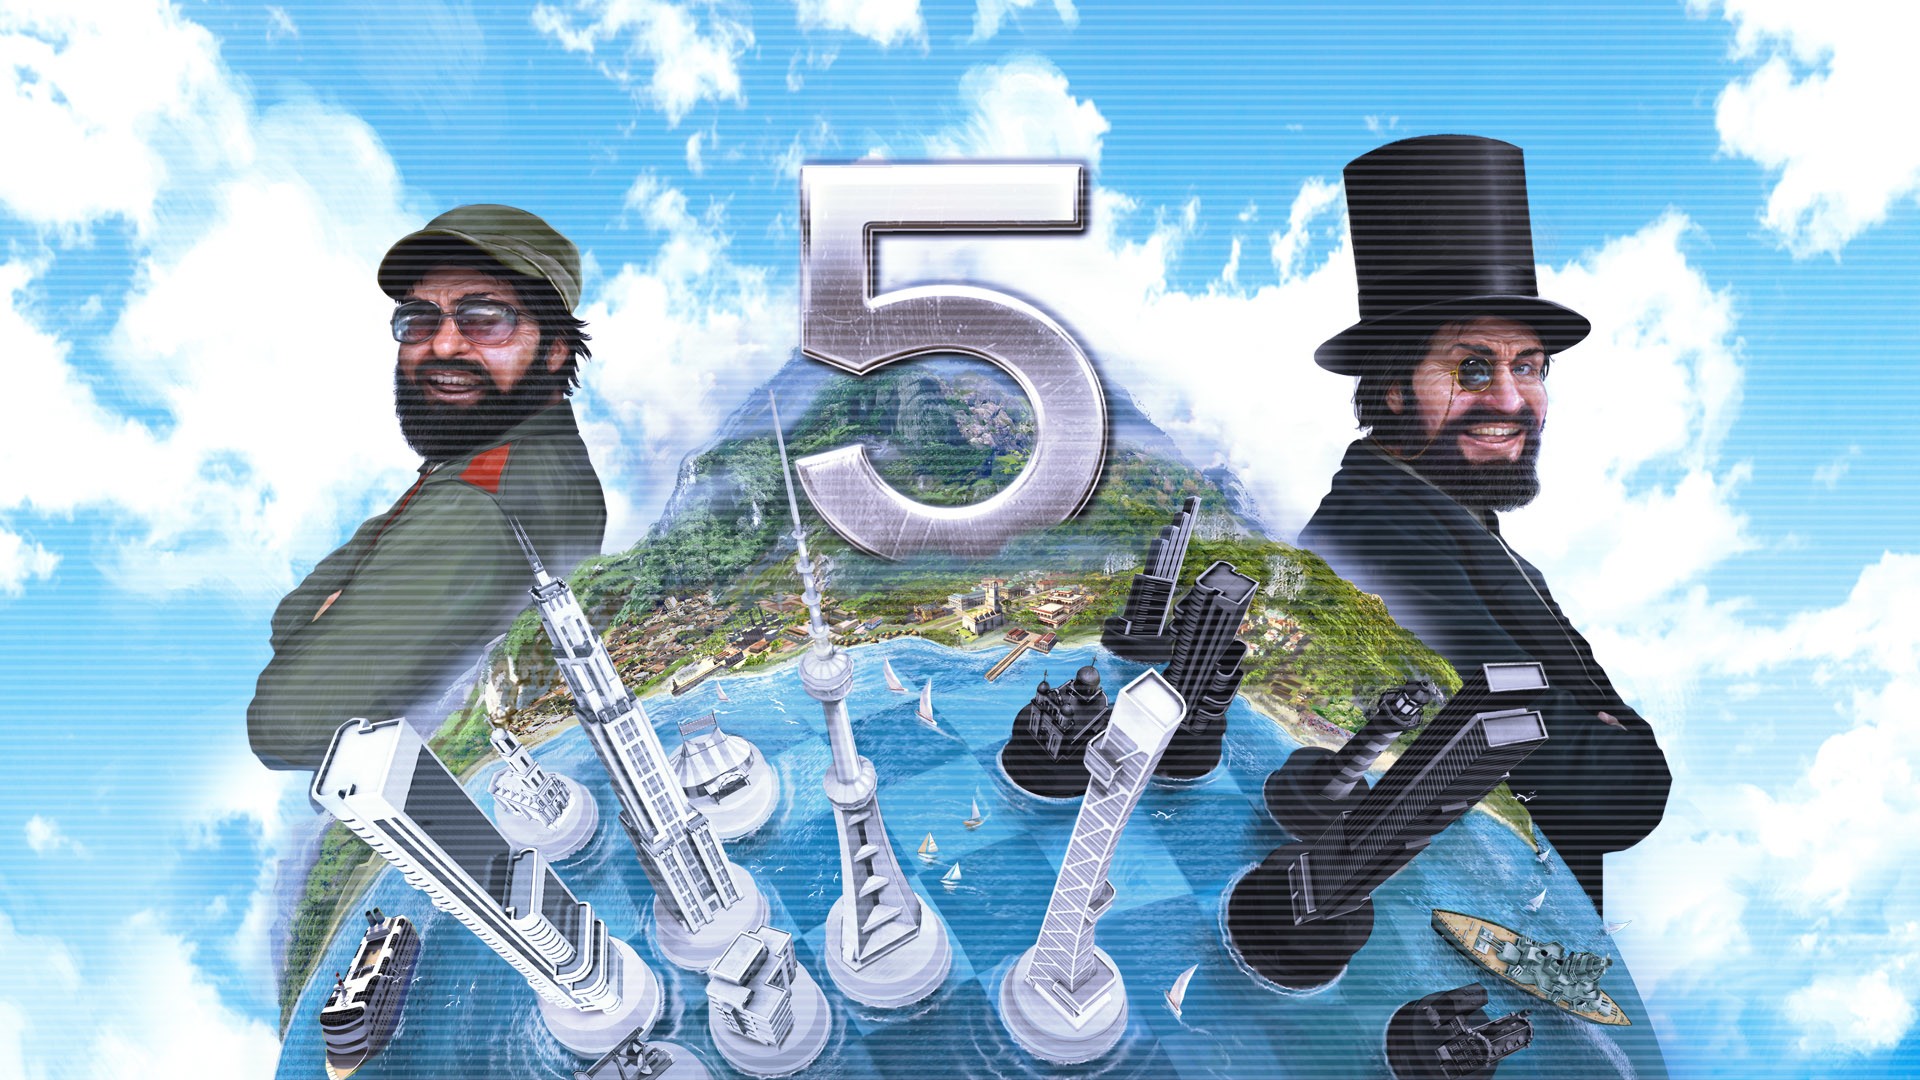 بسته الحاقی جدیدی برای بازی tropico 5 معرفی شد